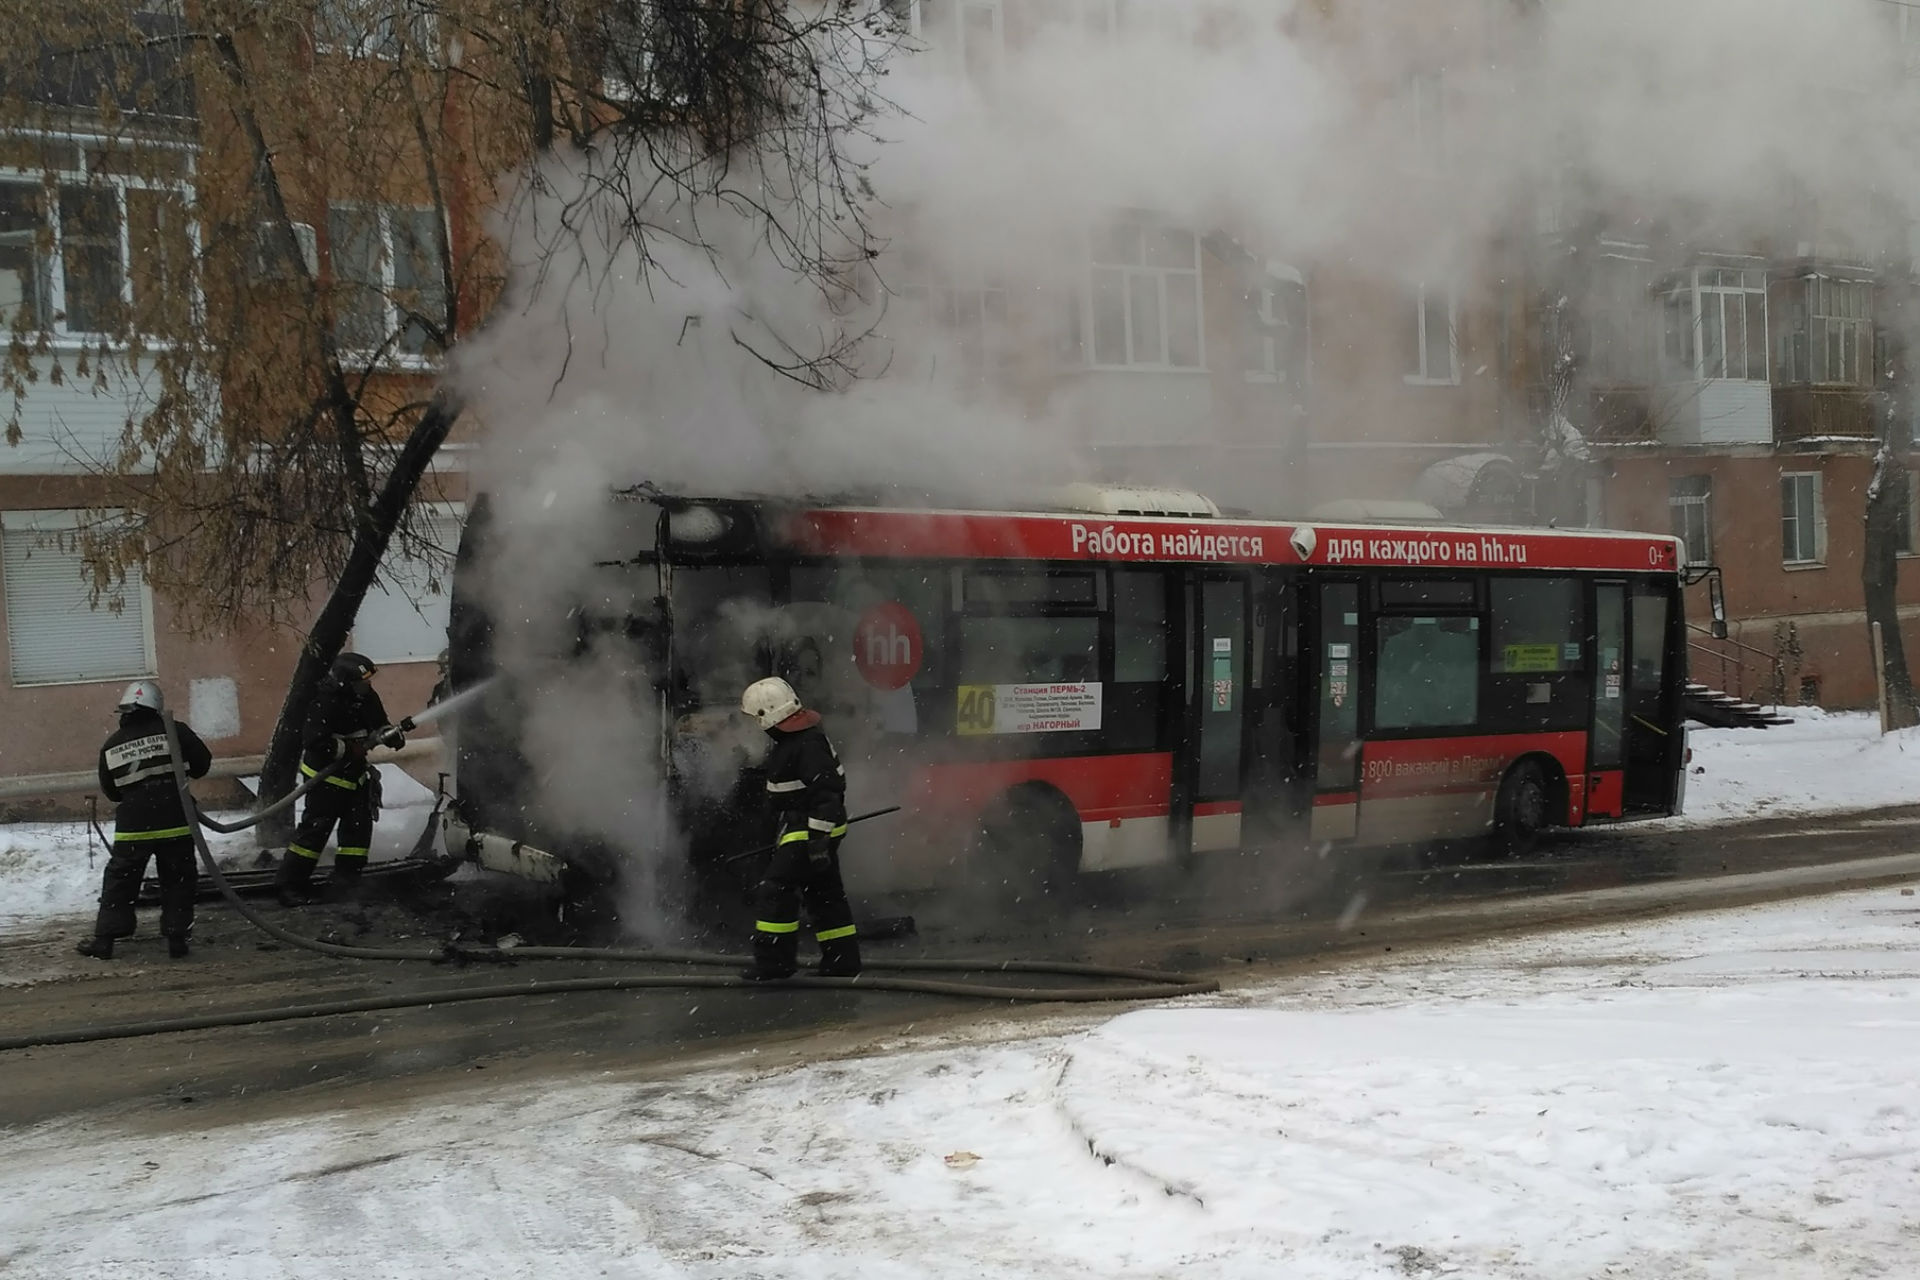 Автобусы пермь расписание на сегодня гайва. В Перми загорелся автобус. Пожар на Гайве. Пожар в Перми на Гайве.